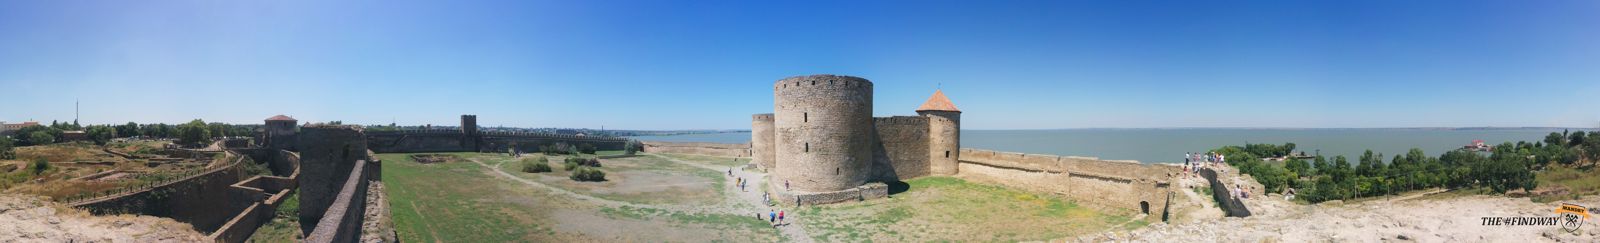 панорама белгород днестровский аккерманская крепость фото панорама